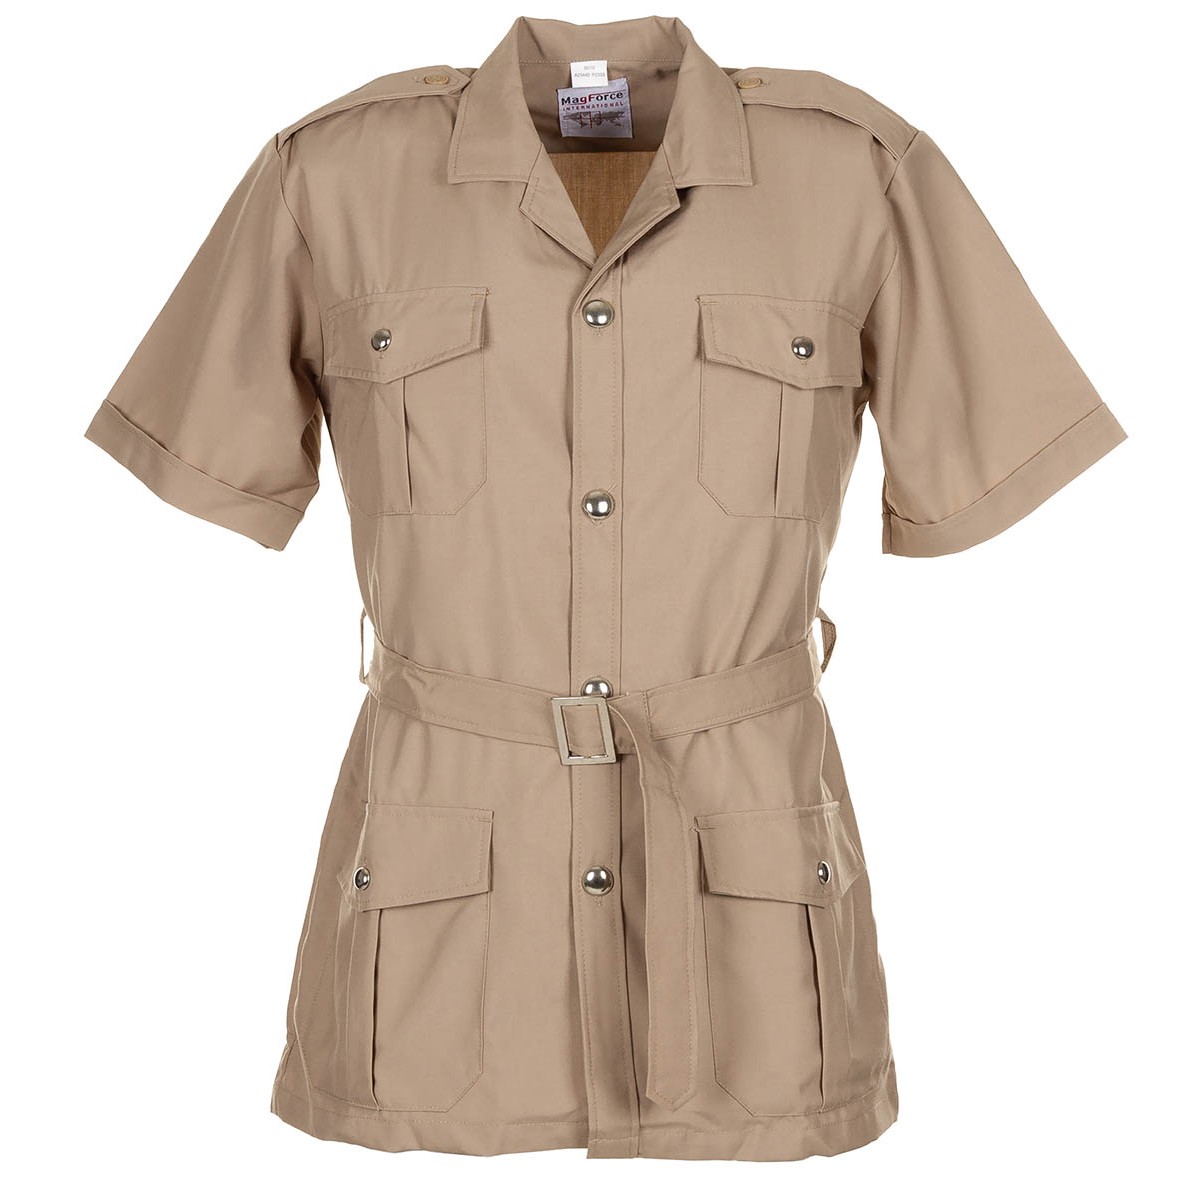 Tropická blůza francouzská košile Safari khaki MagForce® Velikost: 116 dlouhý rukáv